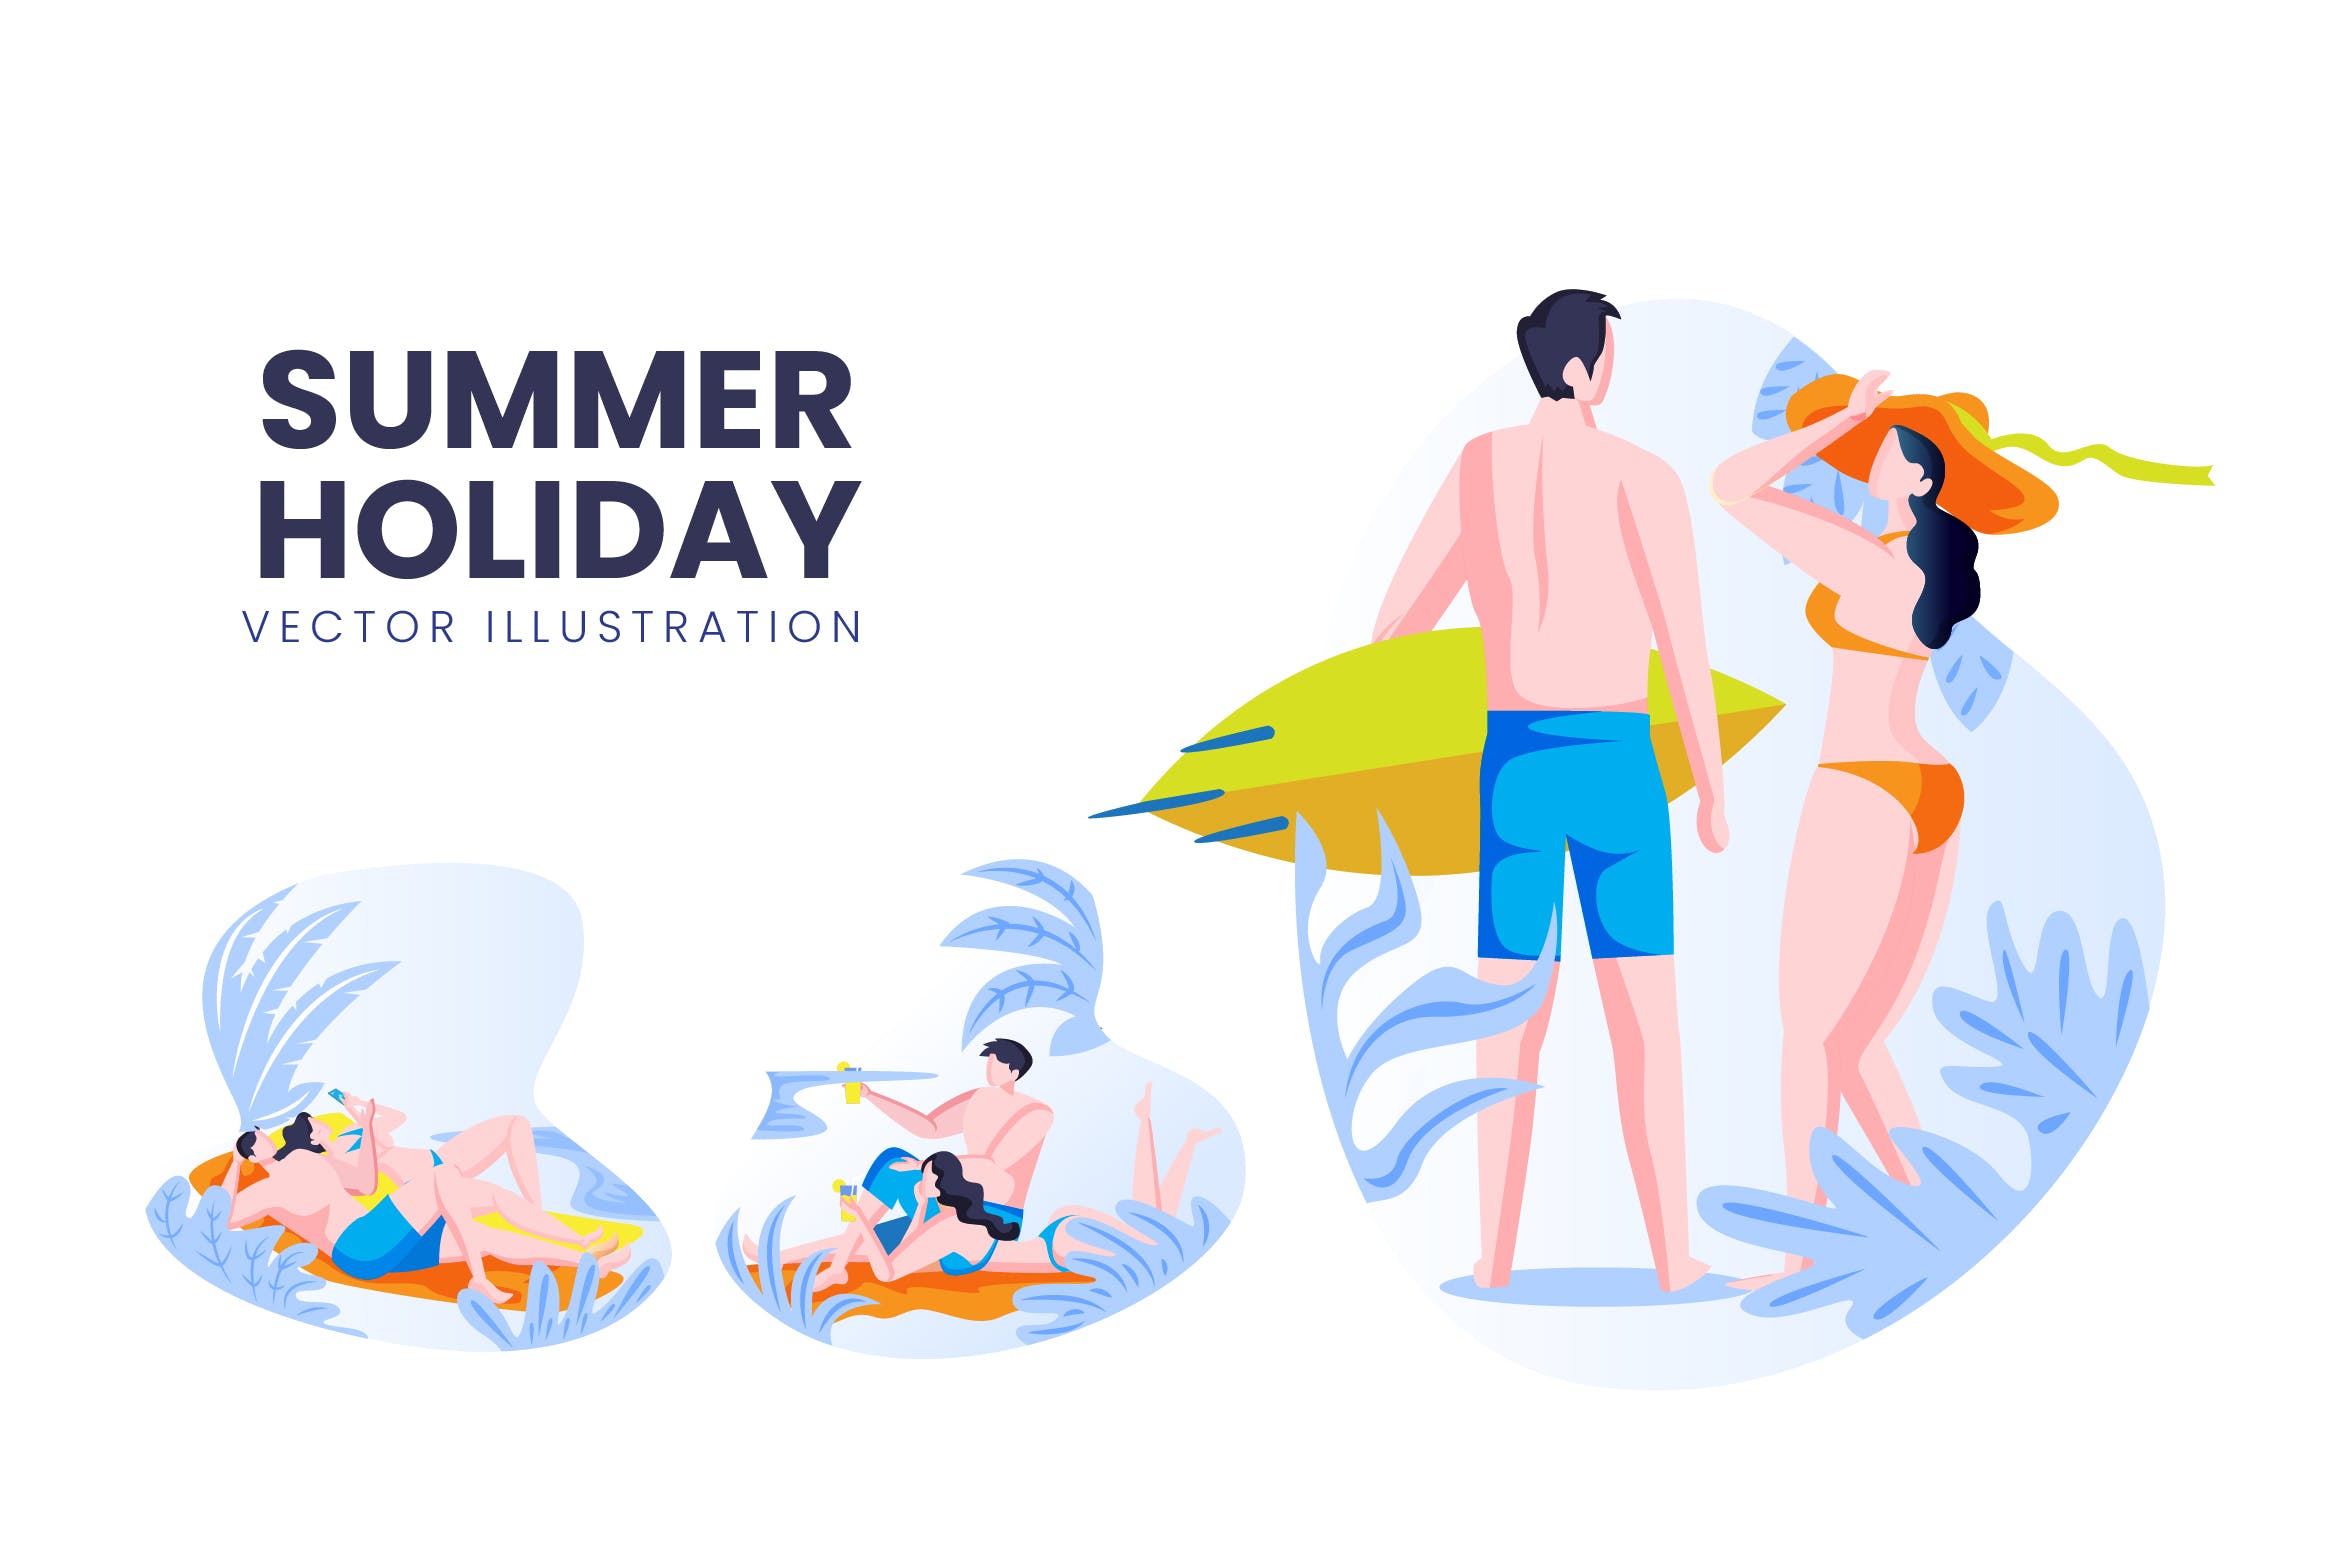 海滩度假主题人物形象非凡图库精选手绘插画矢量素材 Summer Holiday Vector Character Set插图